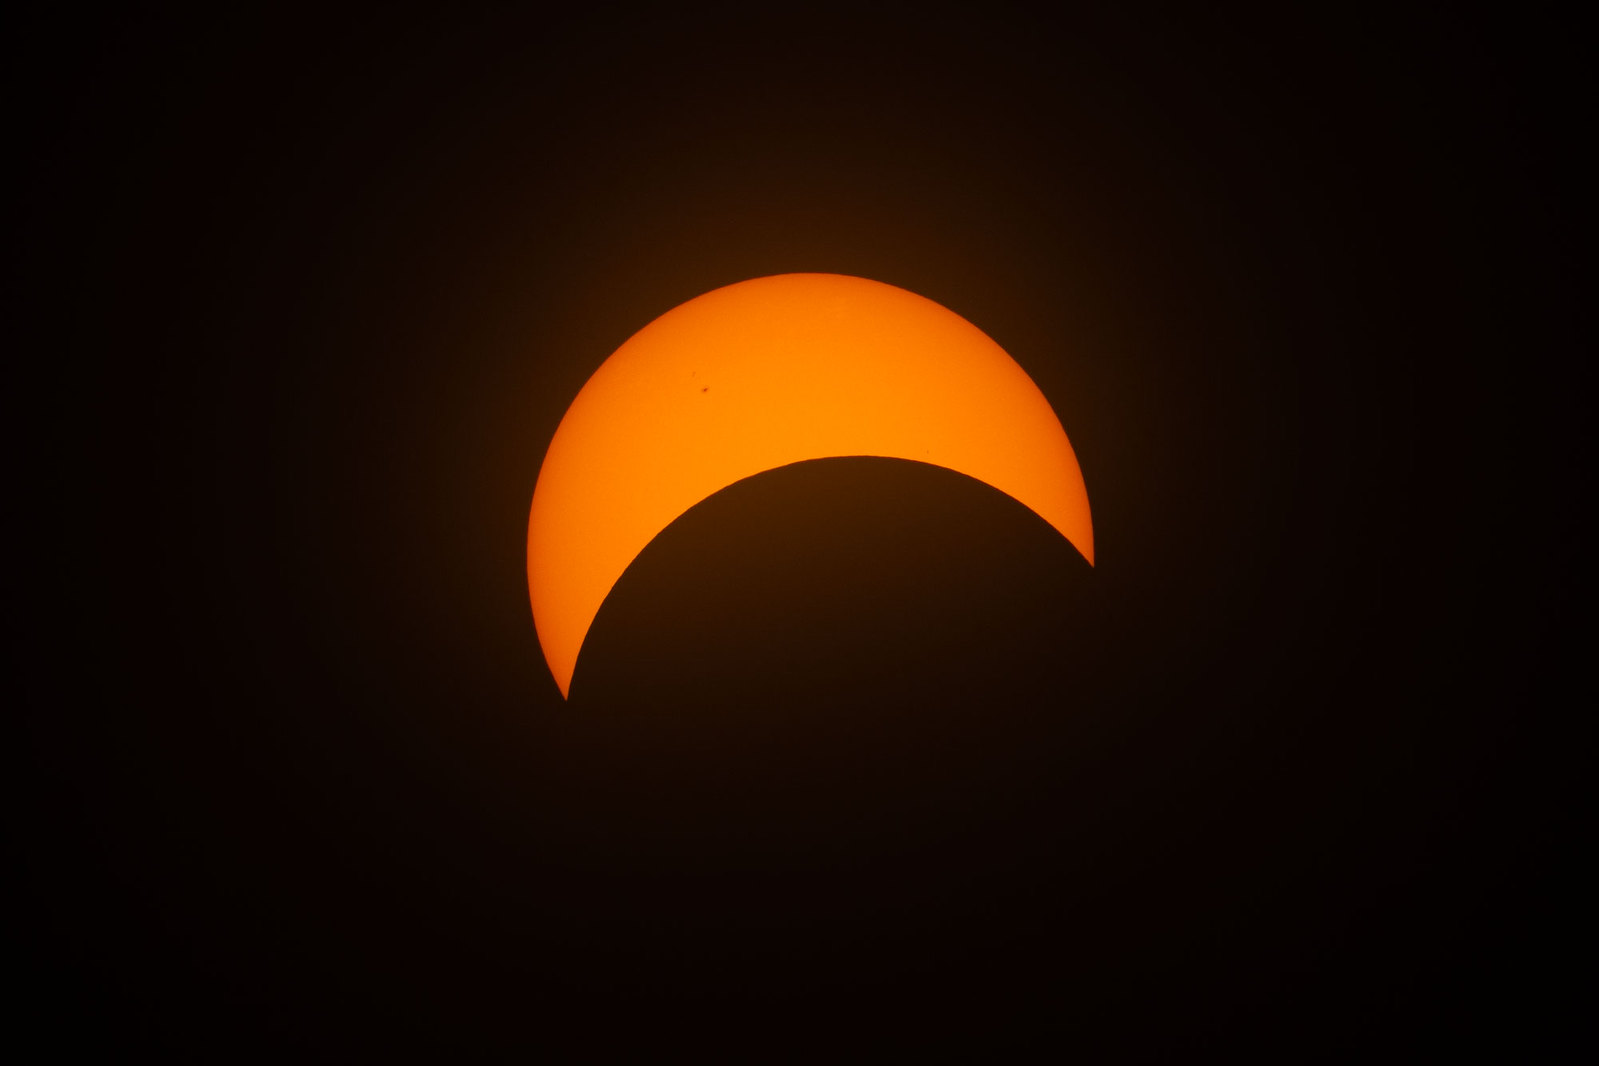 Eclipse-08-04-24-03